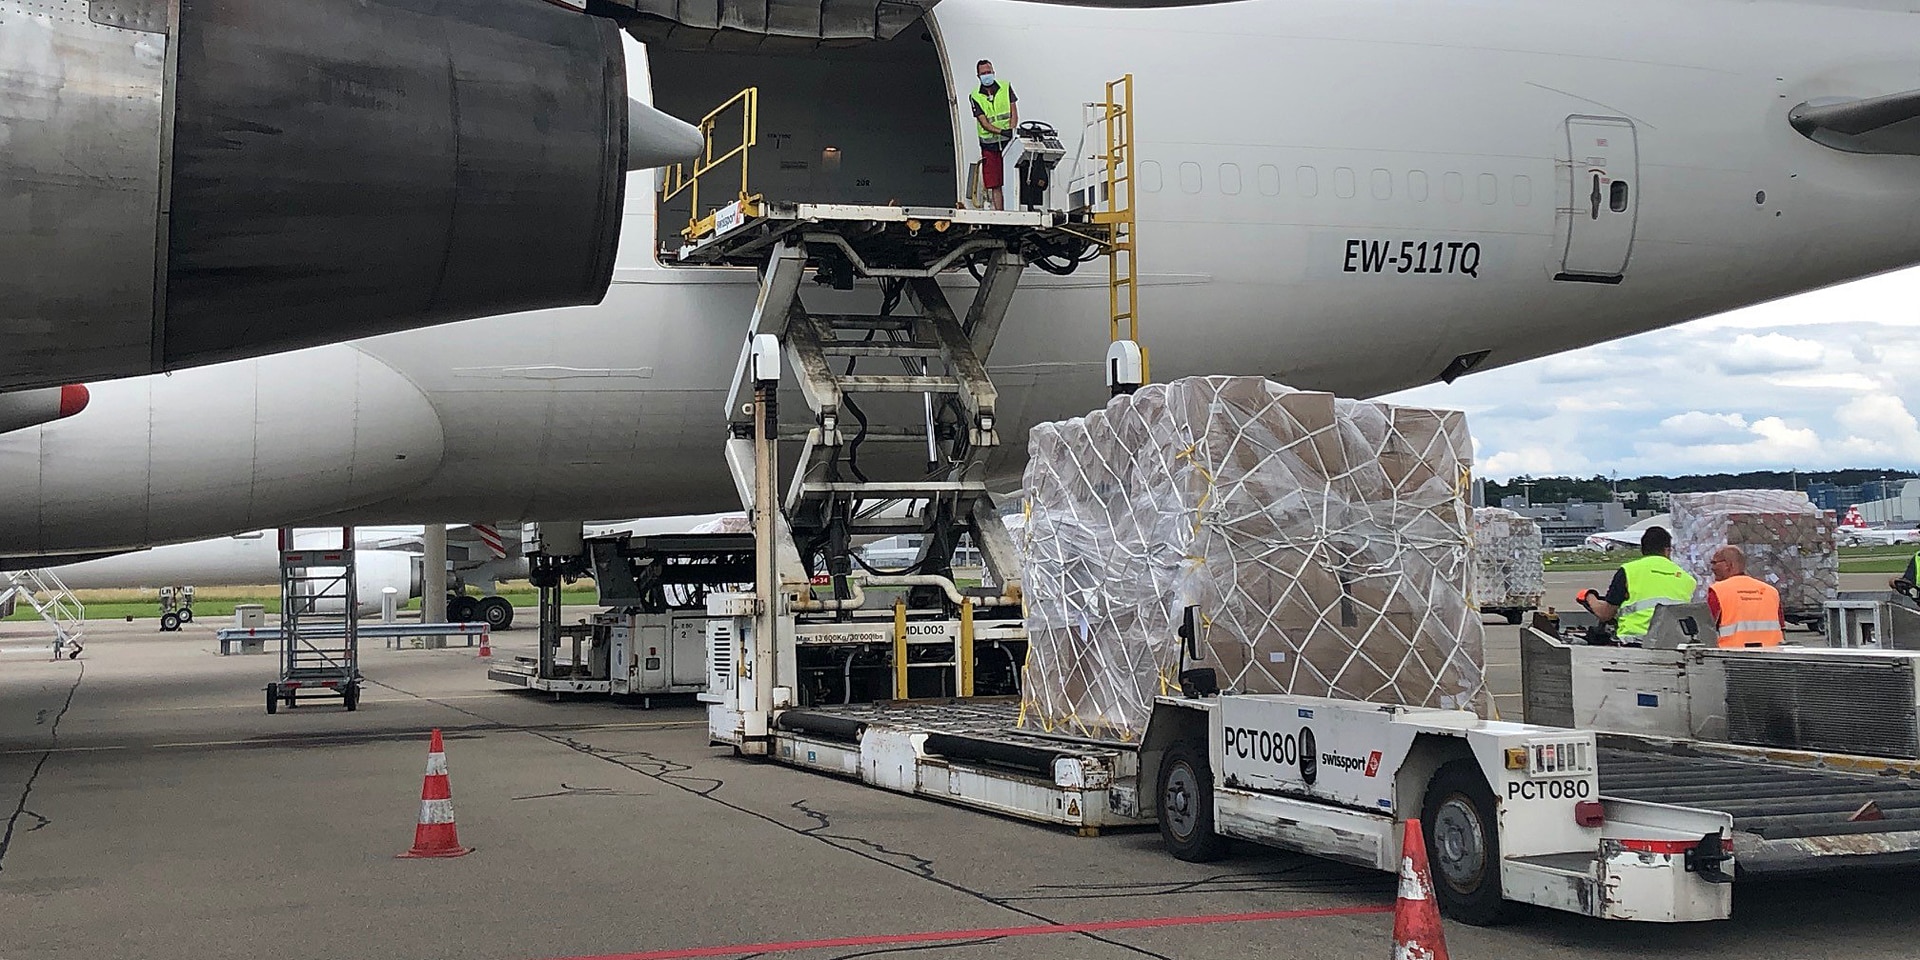  A l'aéroport de Zurich, une centaine de tonnes de matériel de secours à destination de Caracas est chargée dans un jumbo jet. 